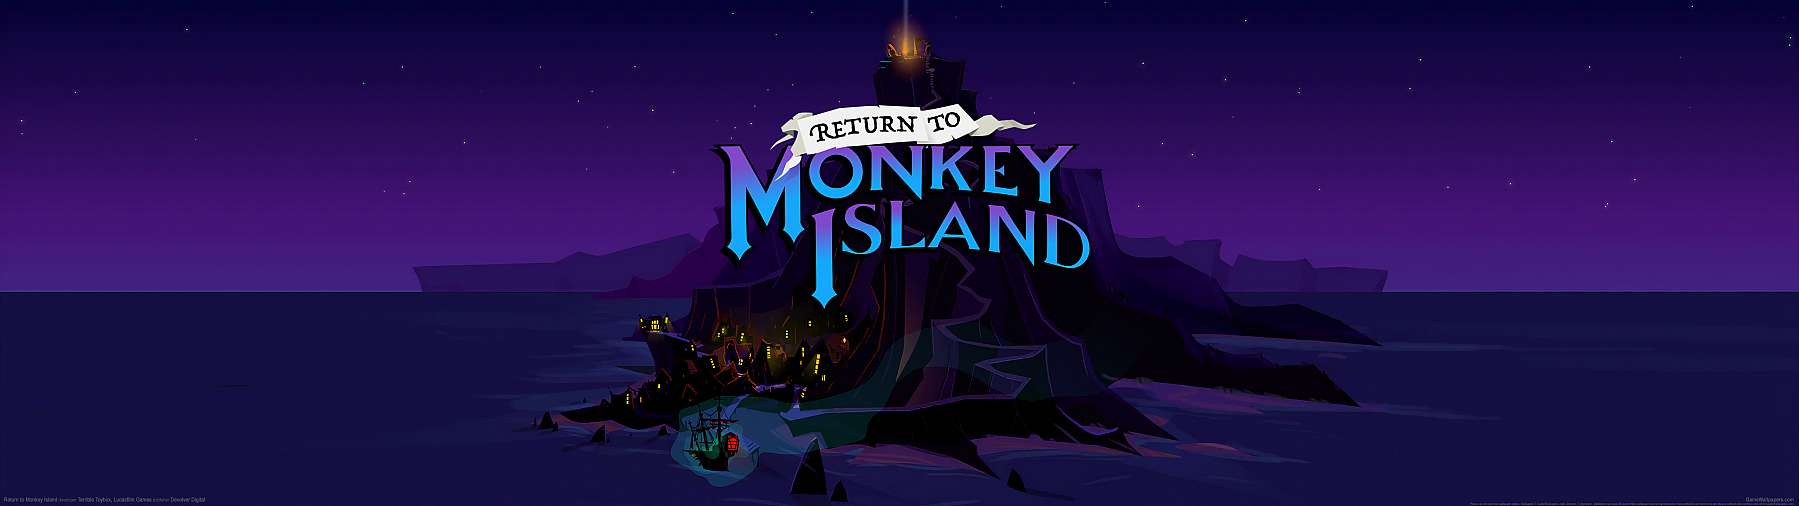 Return to Monkey Island achtergrond